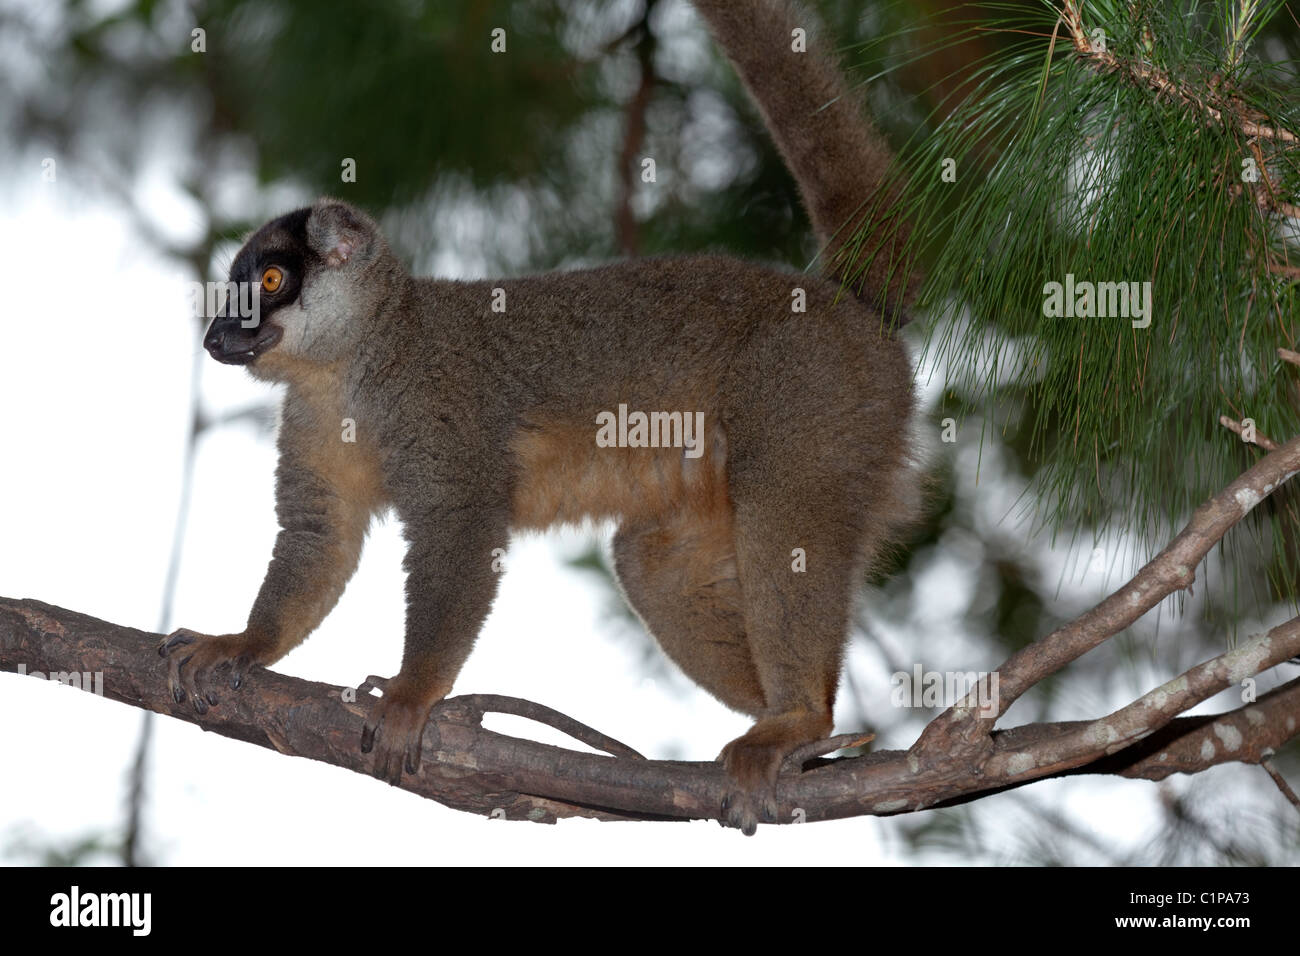 Gemeinsame Braun Lemur (Eulemur fulvus). f. Madagaskar. Nach vorne zeigende Augen lassen Urteil von Distanzen. Schwanz ein Gegengewicht. Bekaempfbar Daumen zu greifen. Stockfoto